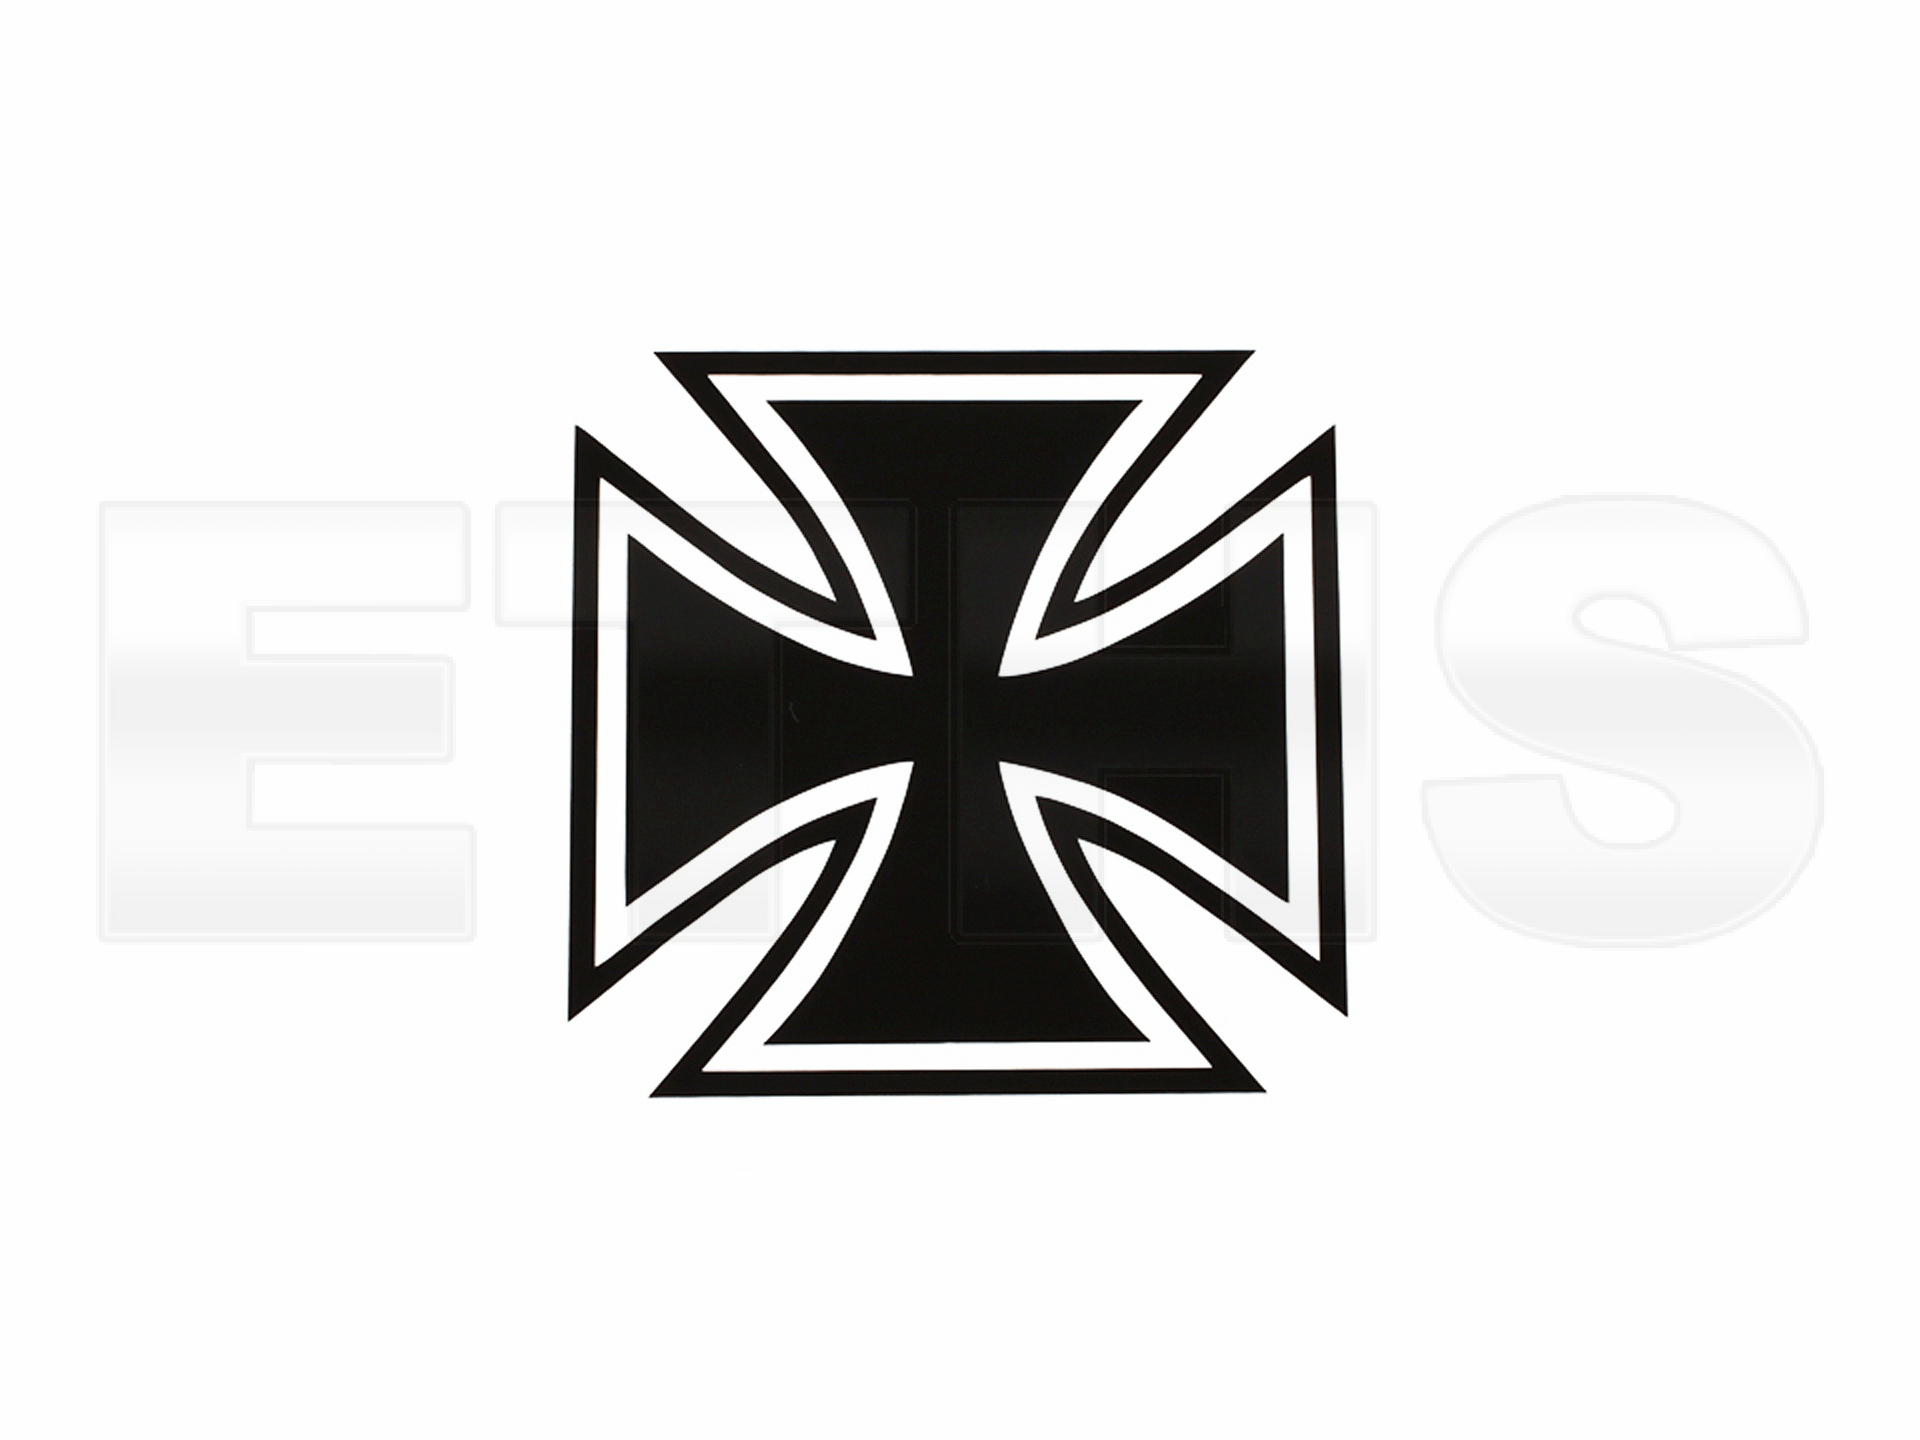 Aufkleber - Eisernes Kreuz - breit (Schwarz) 7cm x 7cm | ETHS Shop